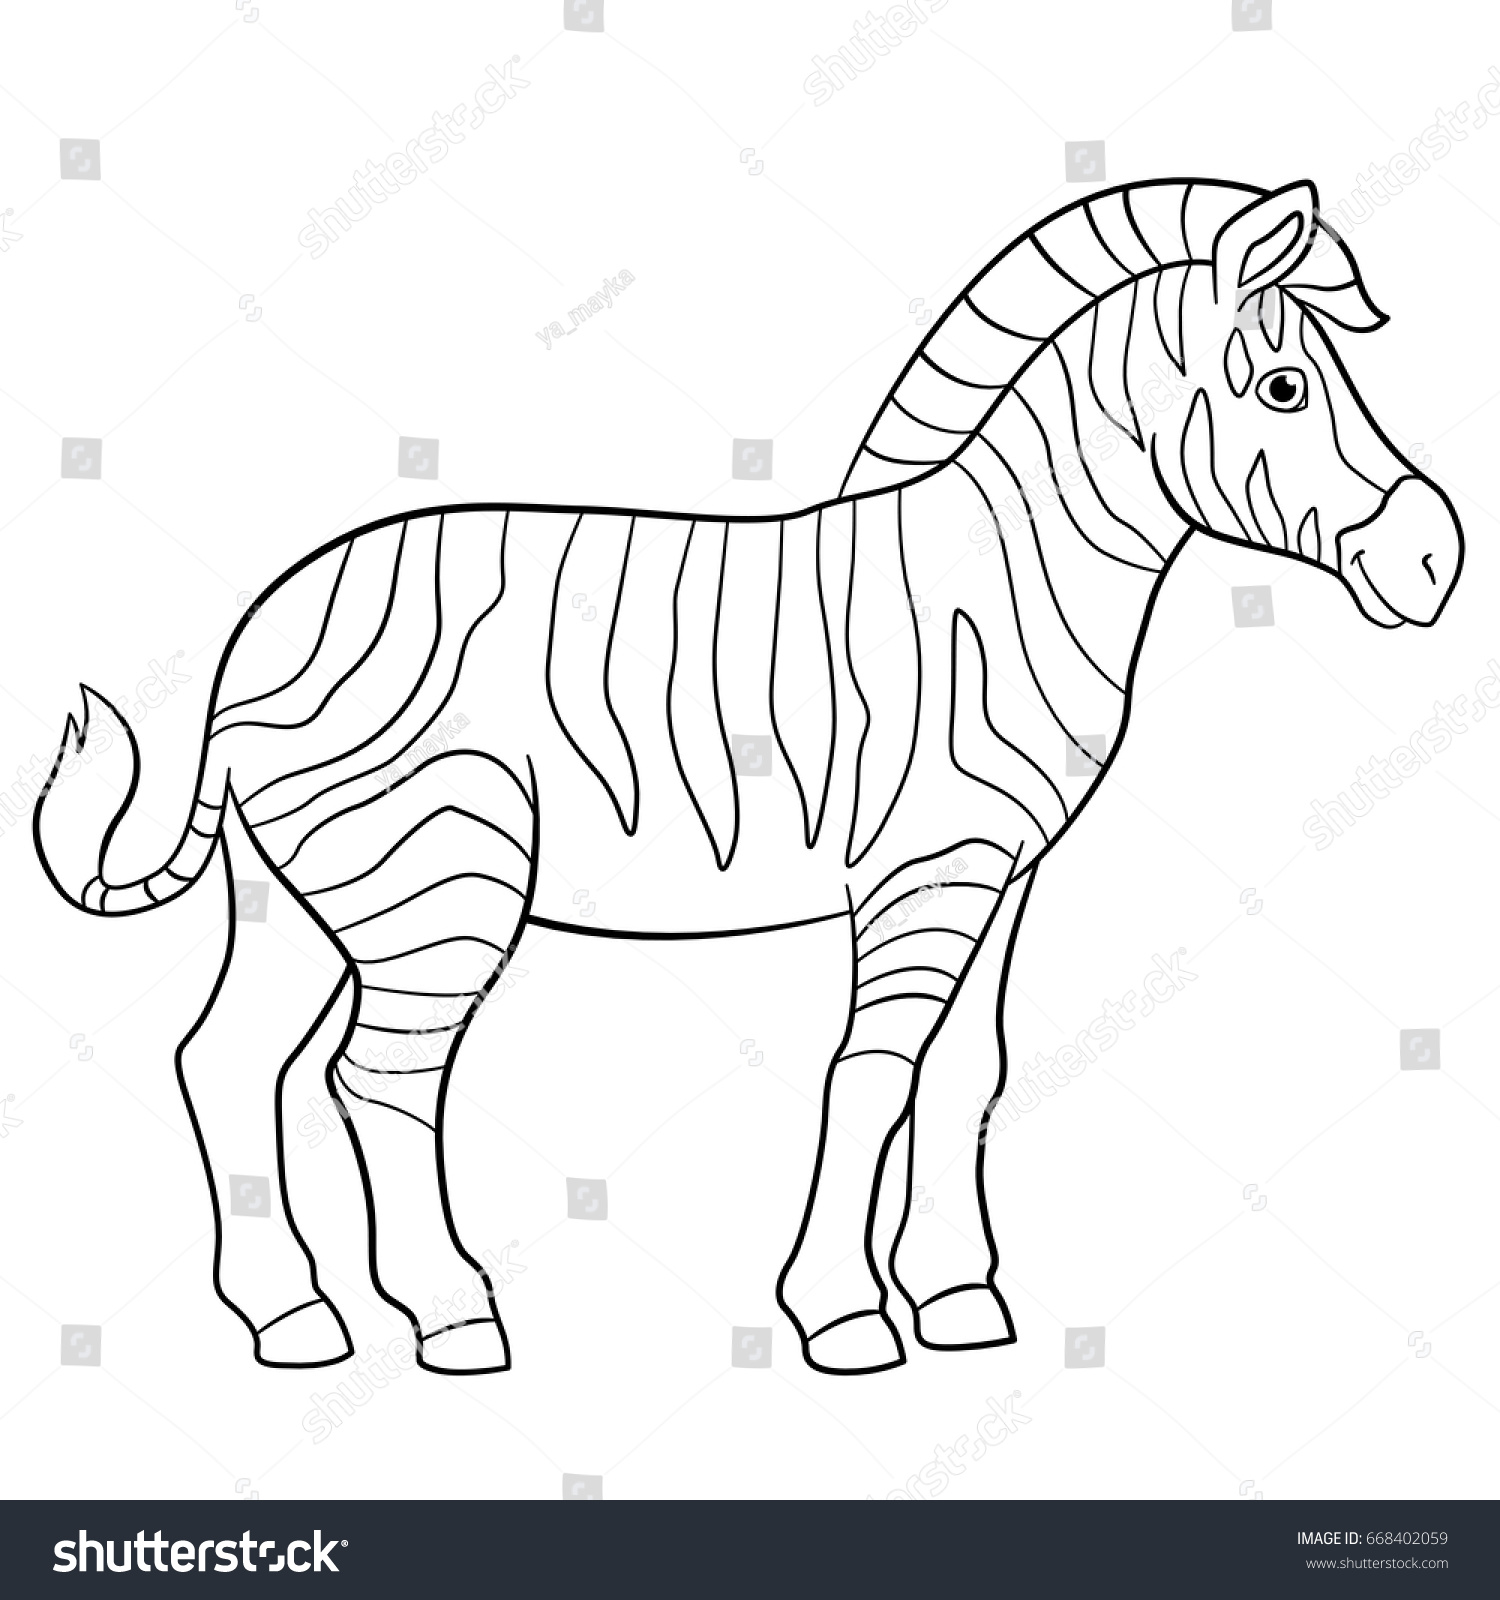 Раскраска зебра для детей